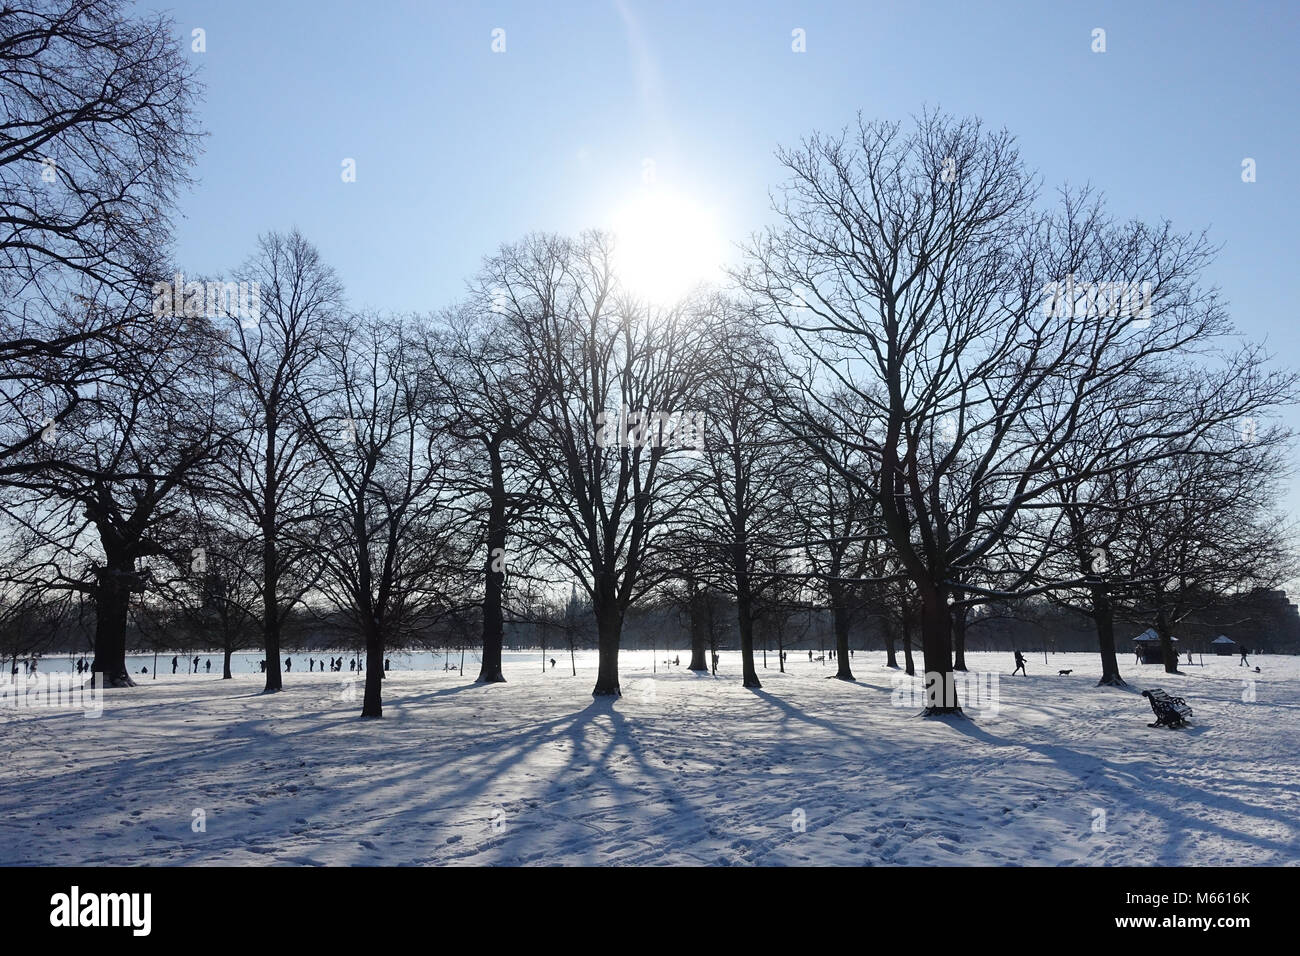 Vista de siluetas de árboles en los jardines de Kensington Londres que generan largas sombras sobre la nieve de la bestia del Este hechizo frío en febrero de 2018 Foto de stock